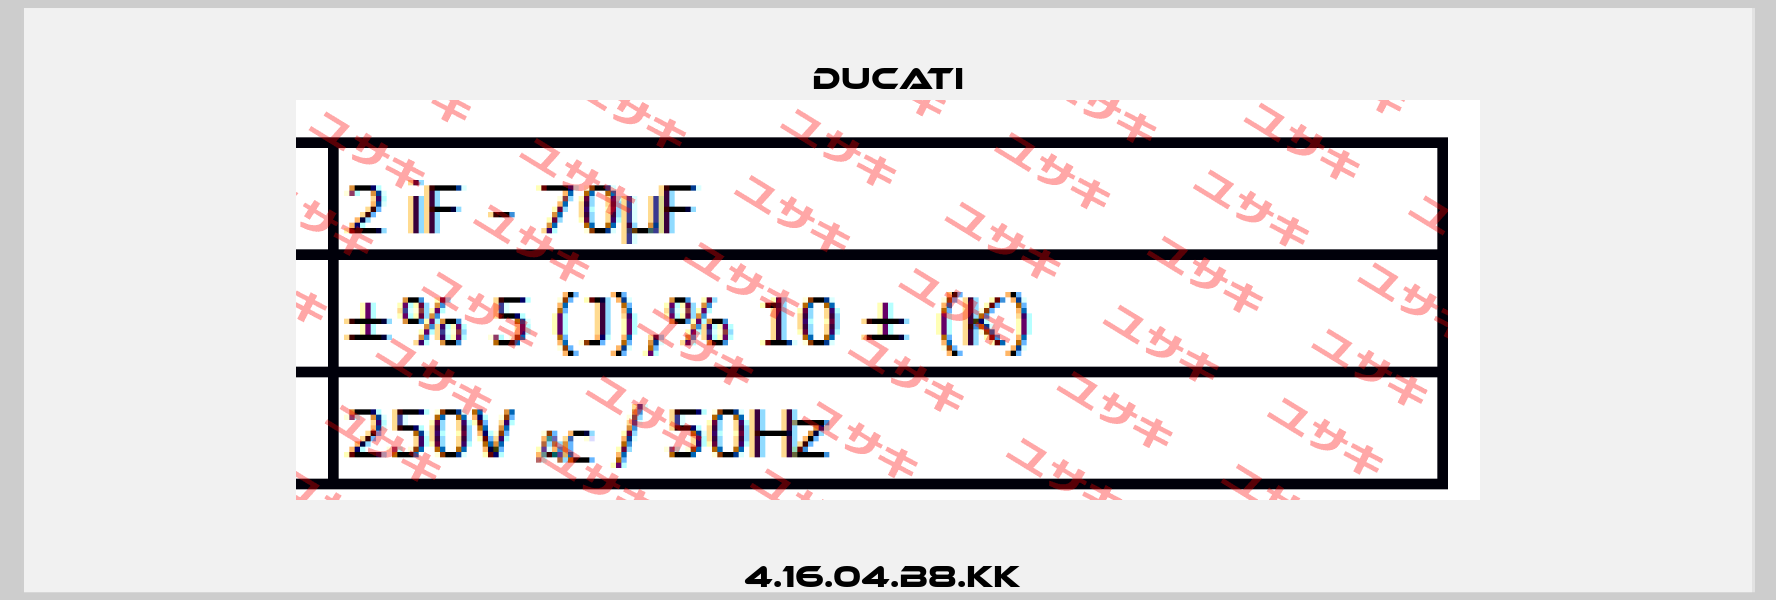 4.16.04.B8.KK  Ducati